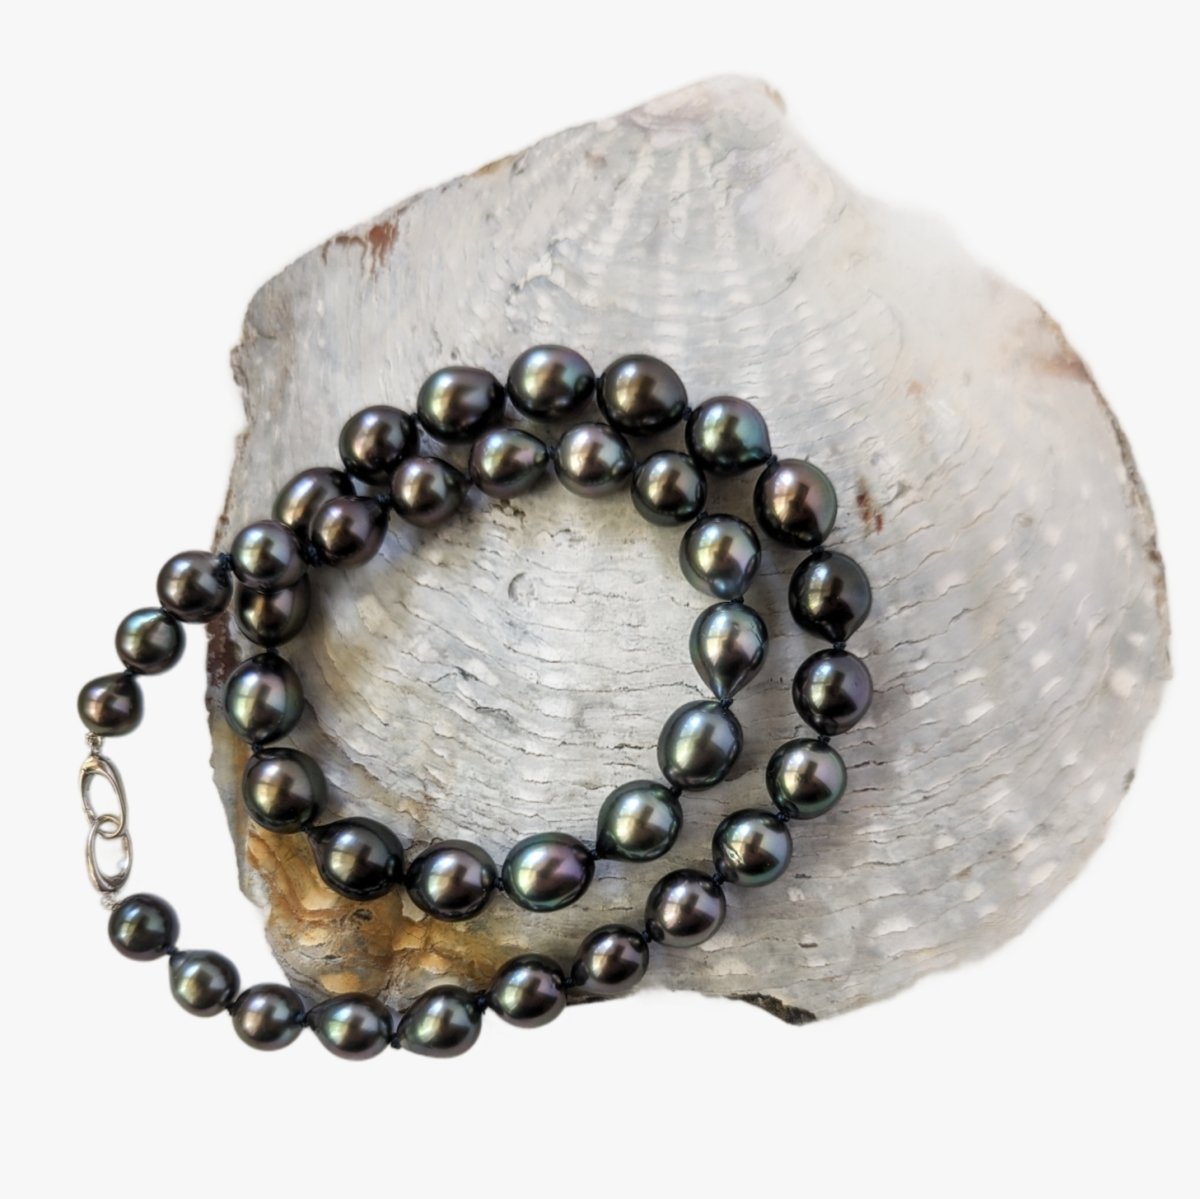 8-10mm Perfect Drops Tahitian Pearl Necklace - Marina Korneev Fine Pearls